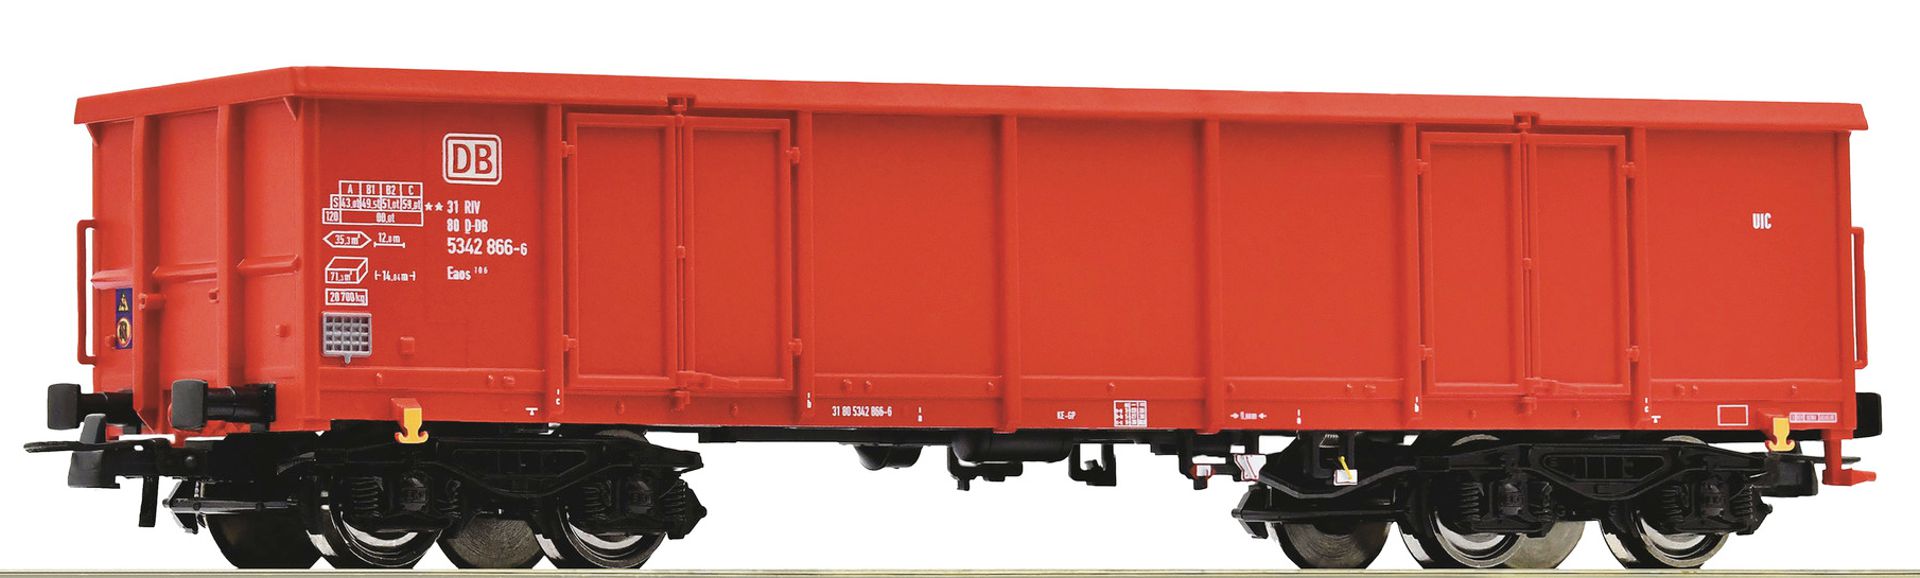 Roco 75859 - Offener Güterwagen Eaos, DBAG, Ep.V-VI, Wagen 1